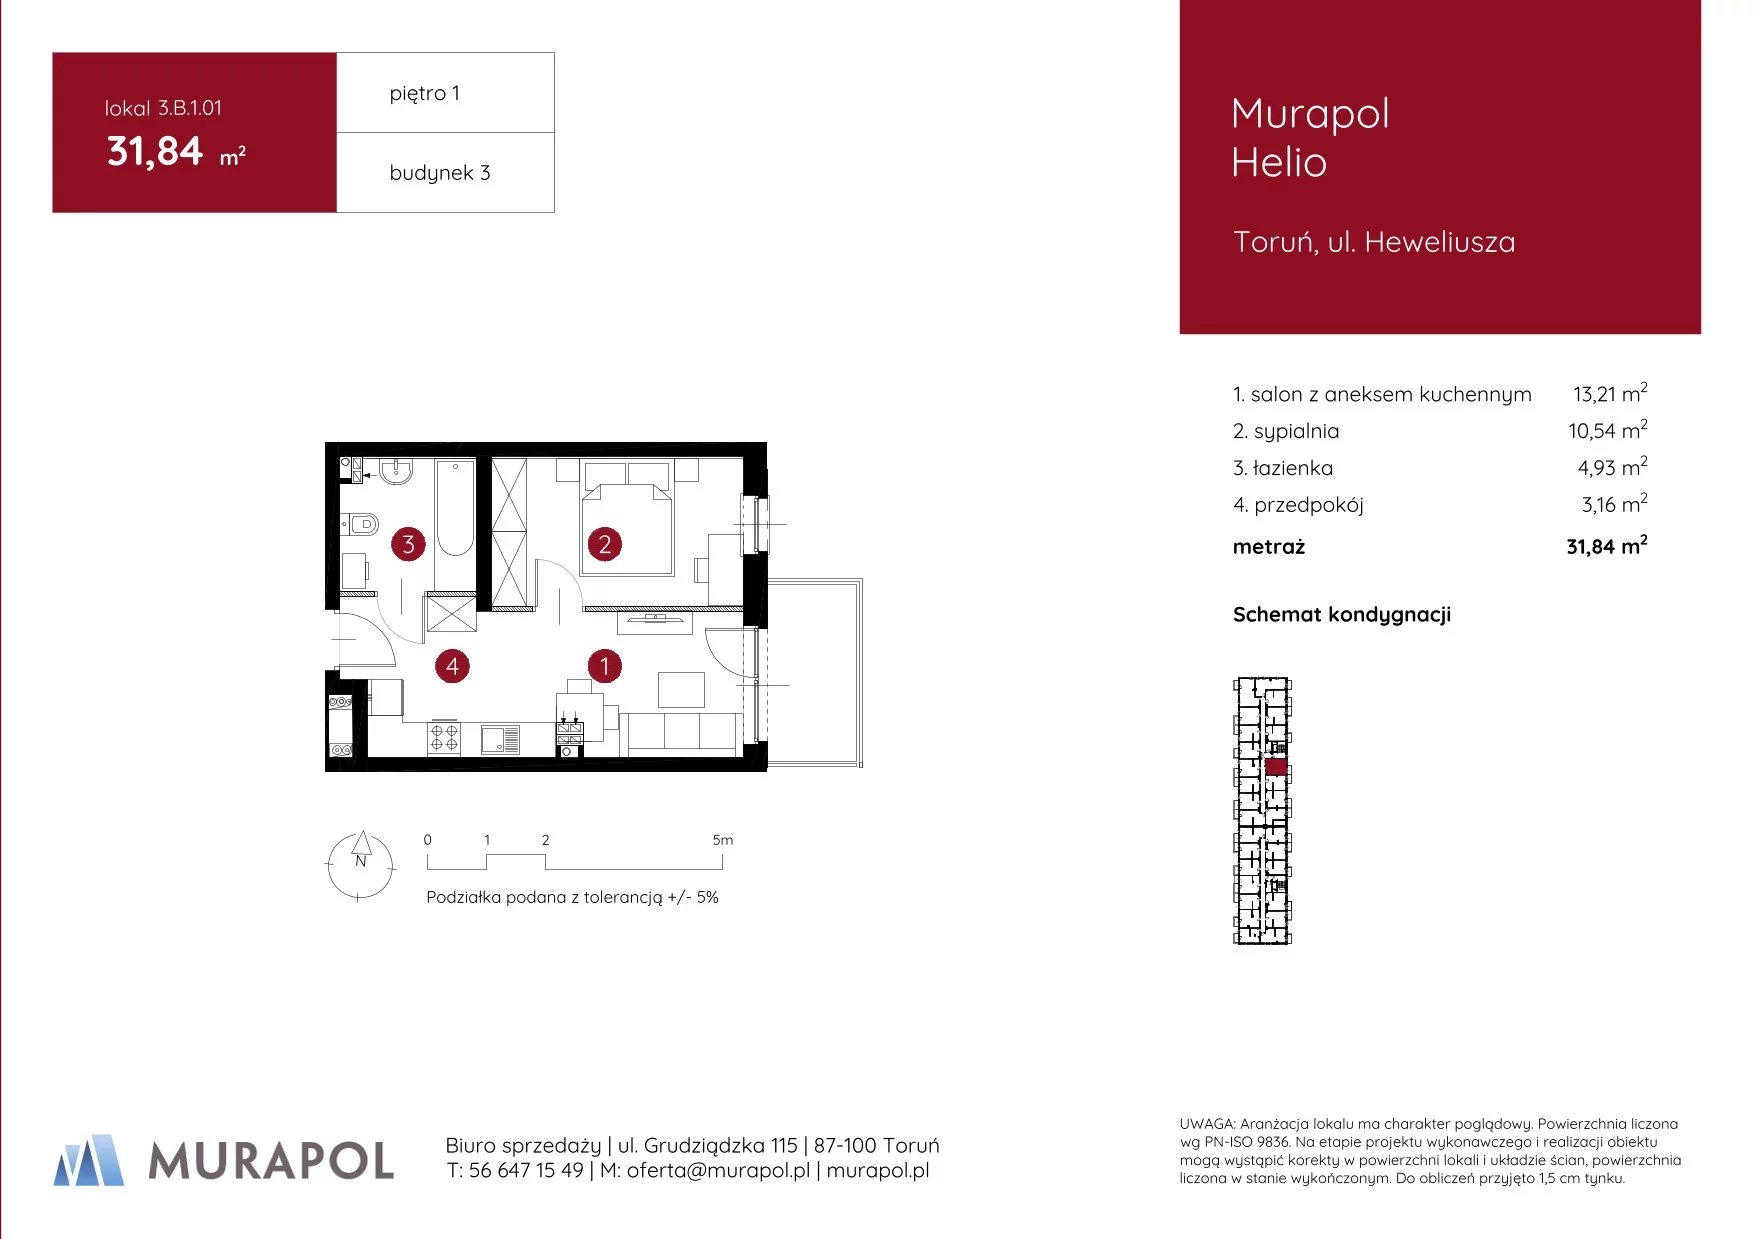 Mieszkanie 31,84 m², piętro 1, oferta nr 3.B.1.01, Murapol Helio, Toruń, Wrzosy, JAR, ul. Heweliusza